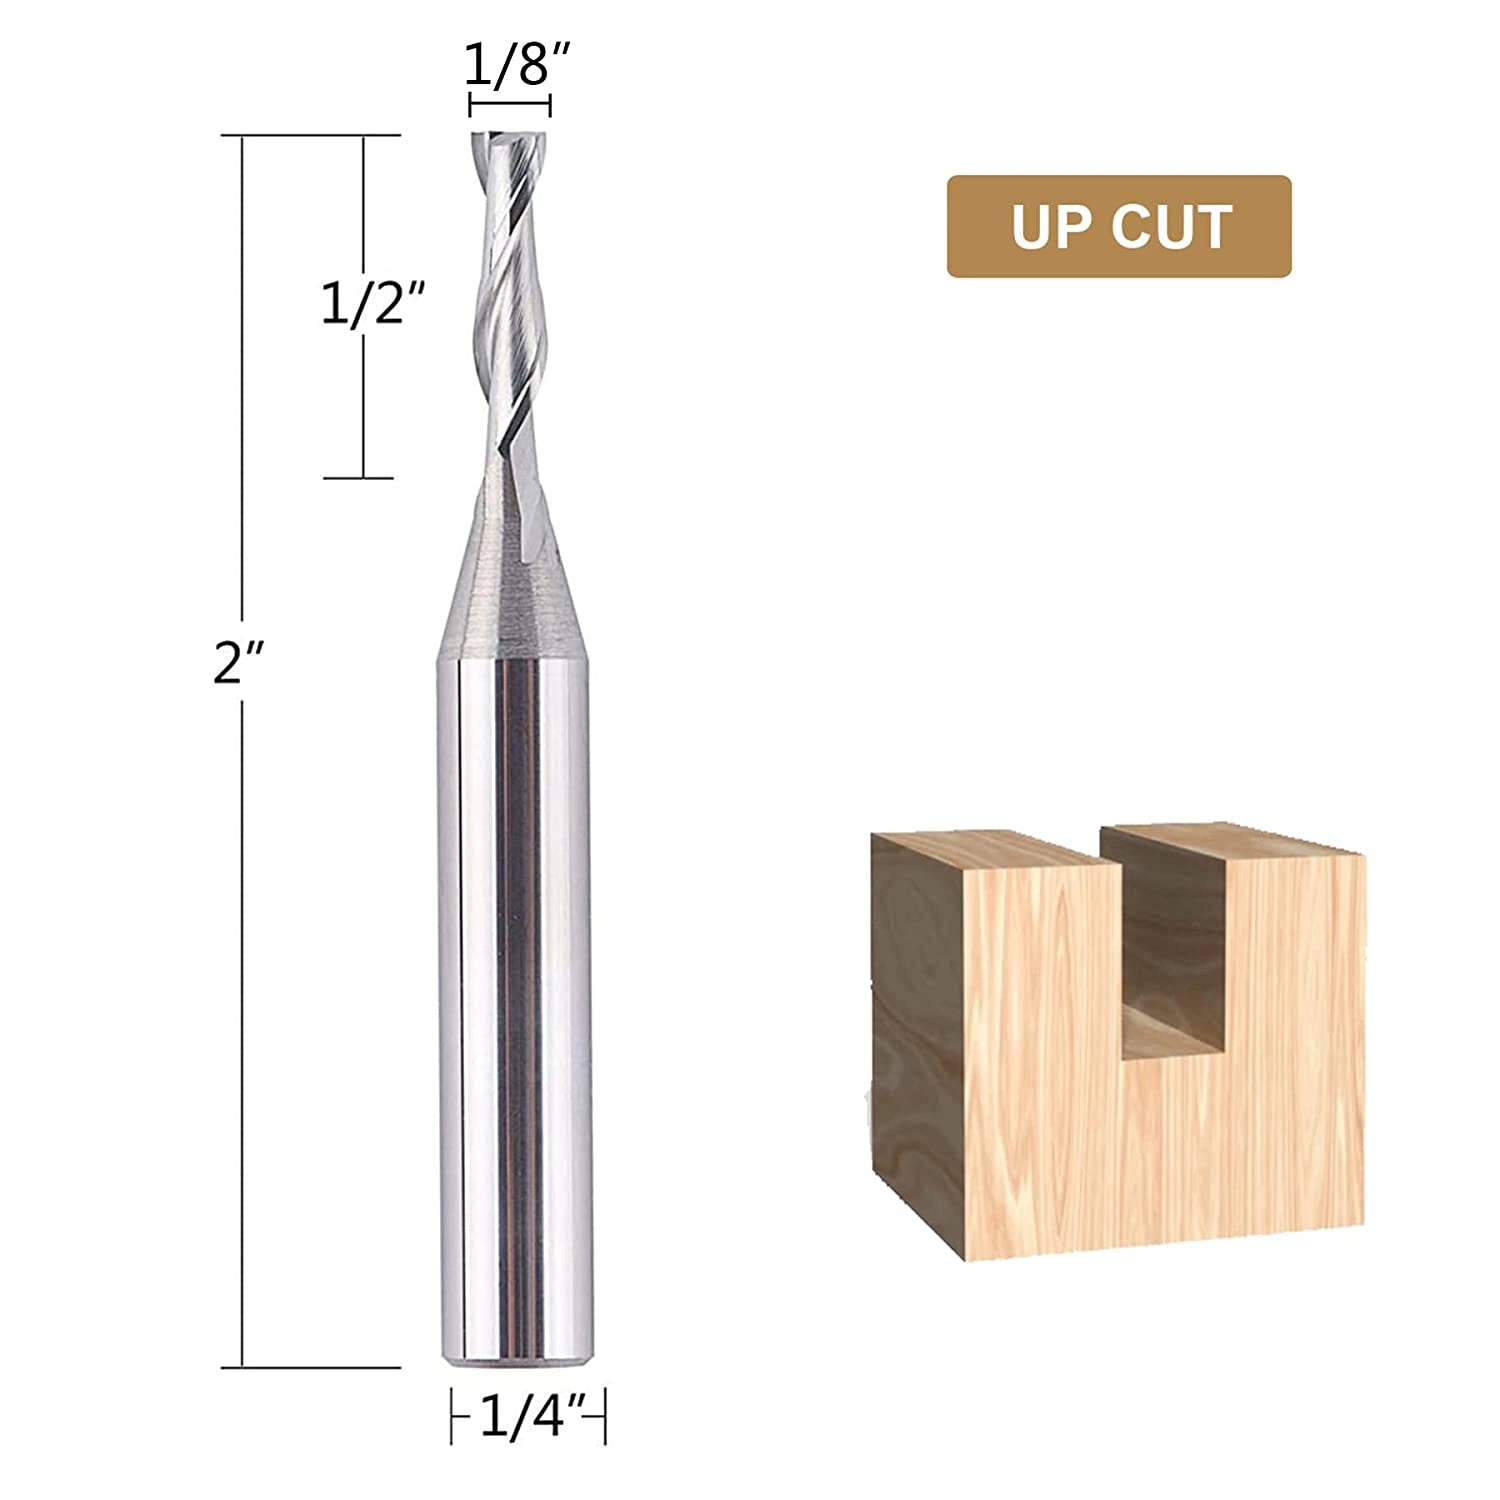 SpeTool CNC 1/8" Cutting Dia Spiral Up Cut Router Bit 1/4 SHK Wood Cut